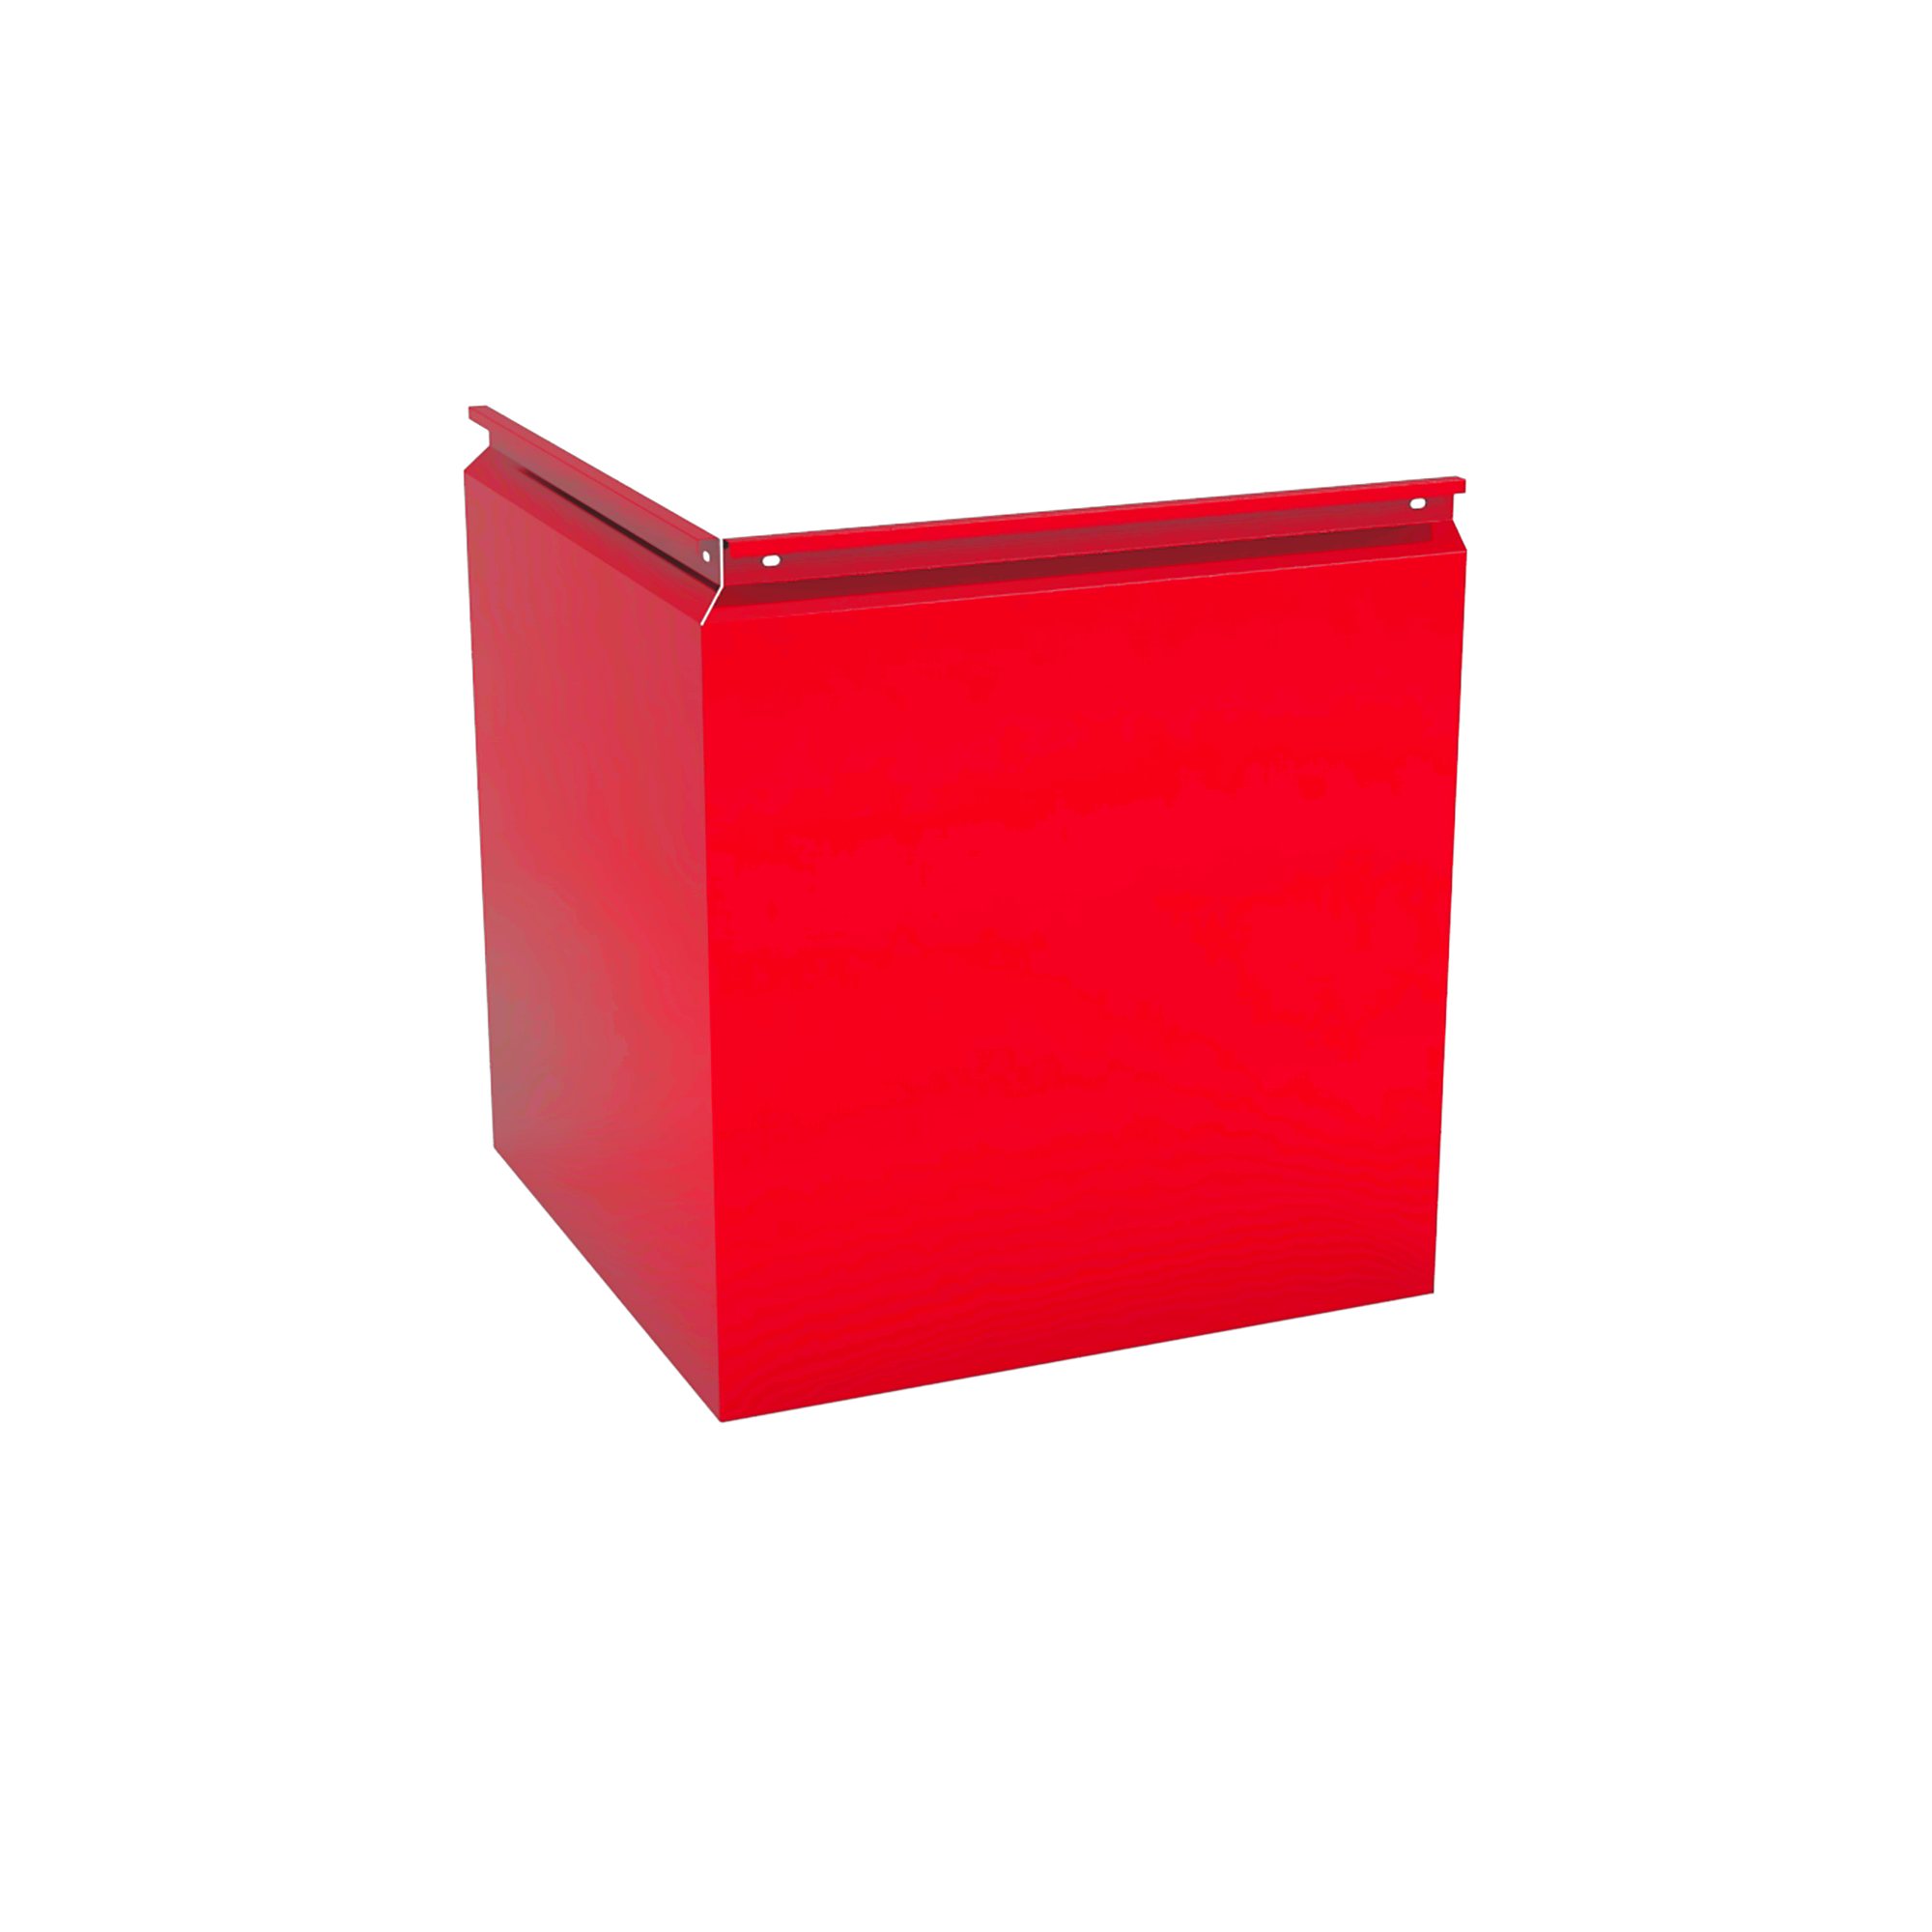 Фасадная кассета Угловая 1025 Транспортный красный 0,7 мм Фасадные кассеты Кровля Сервис